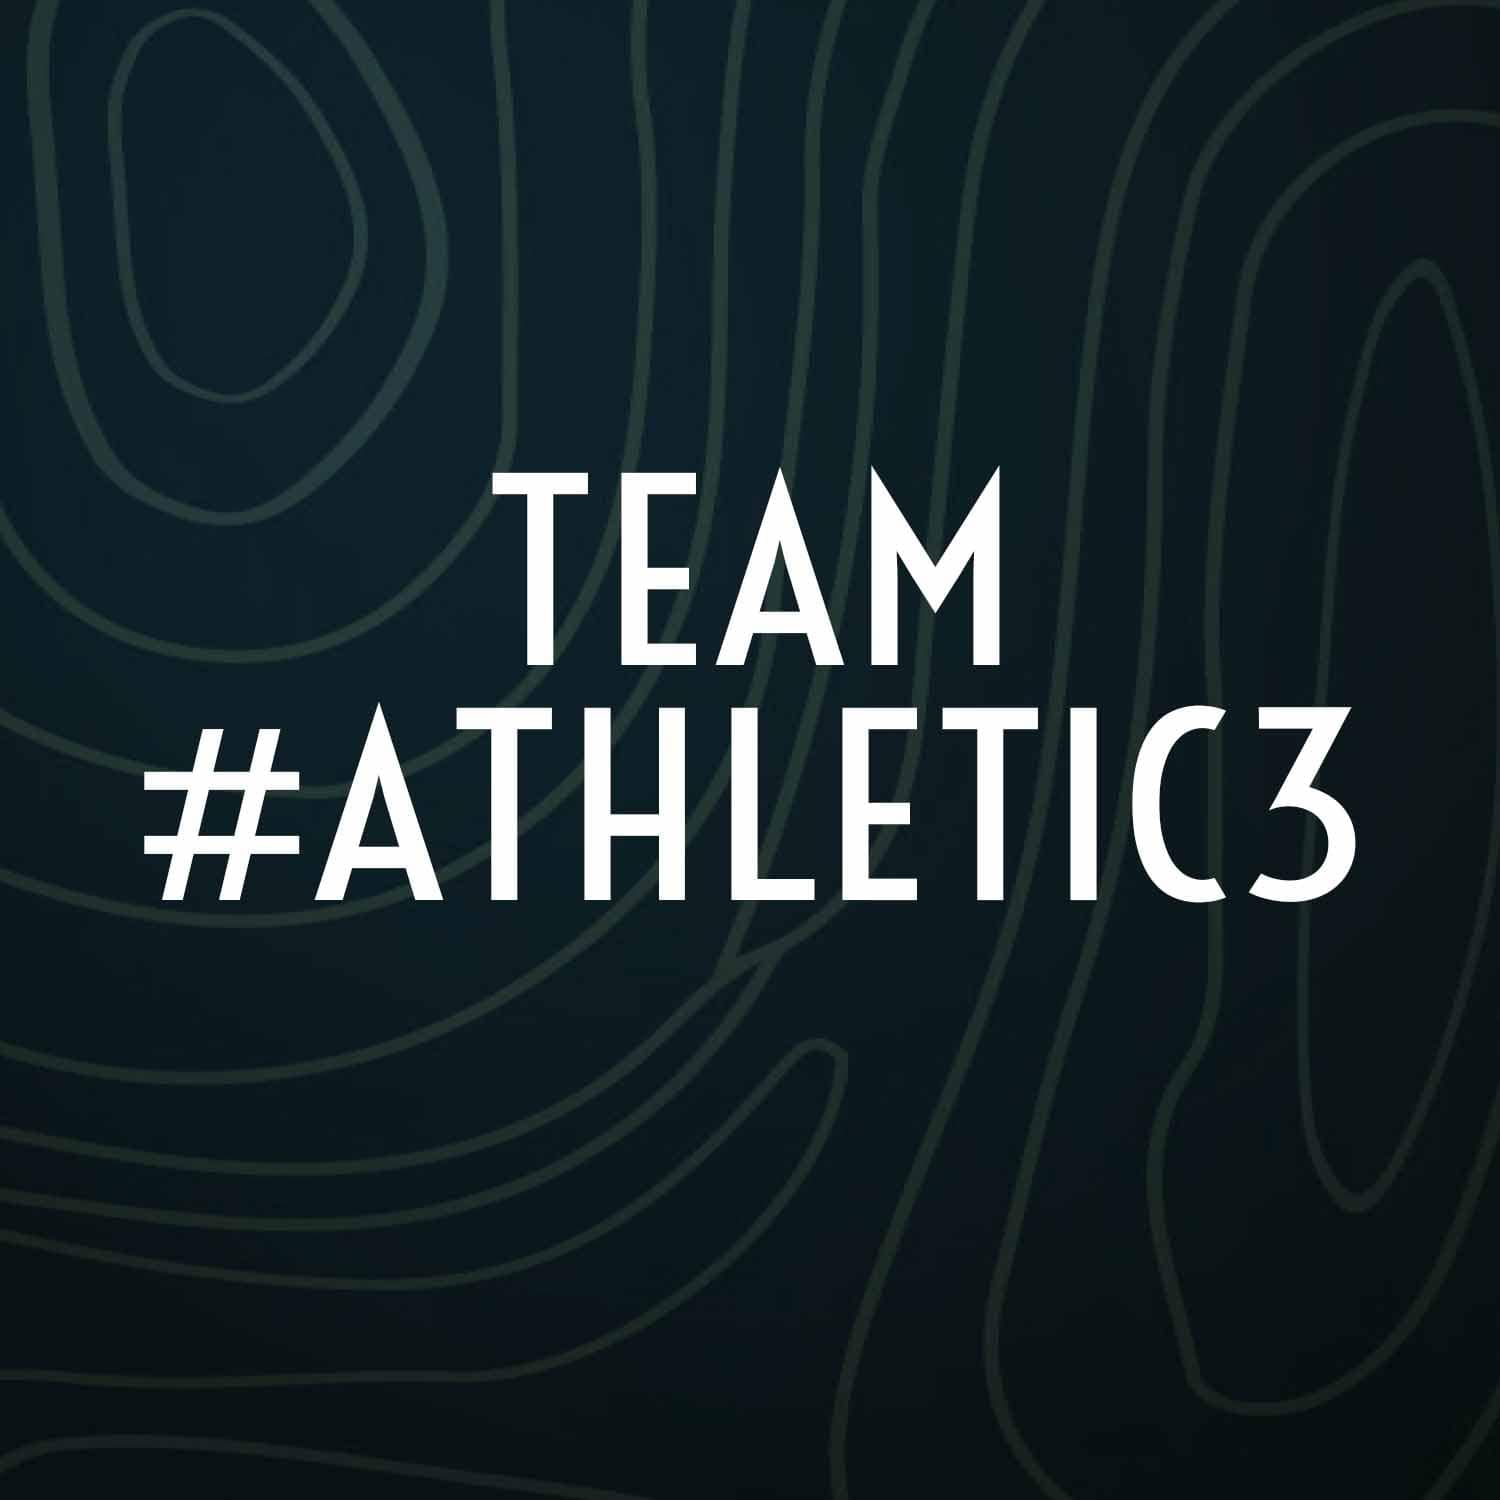 Neuzugänge im Team #ATHLETIC3